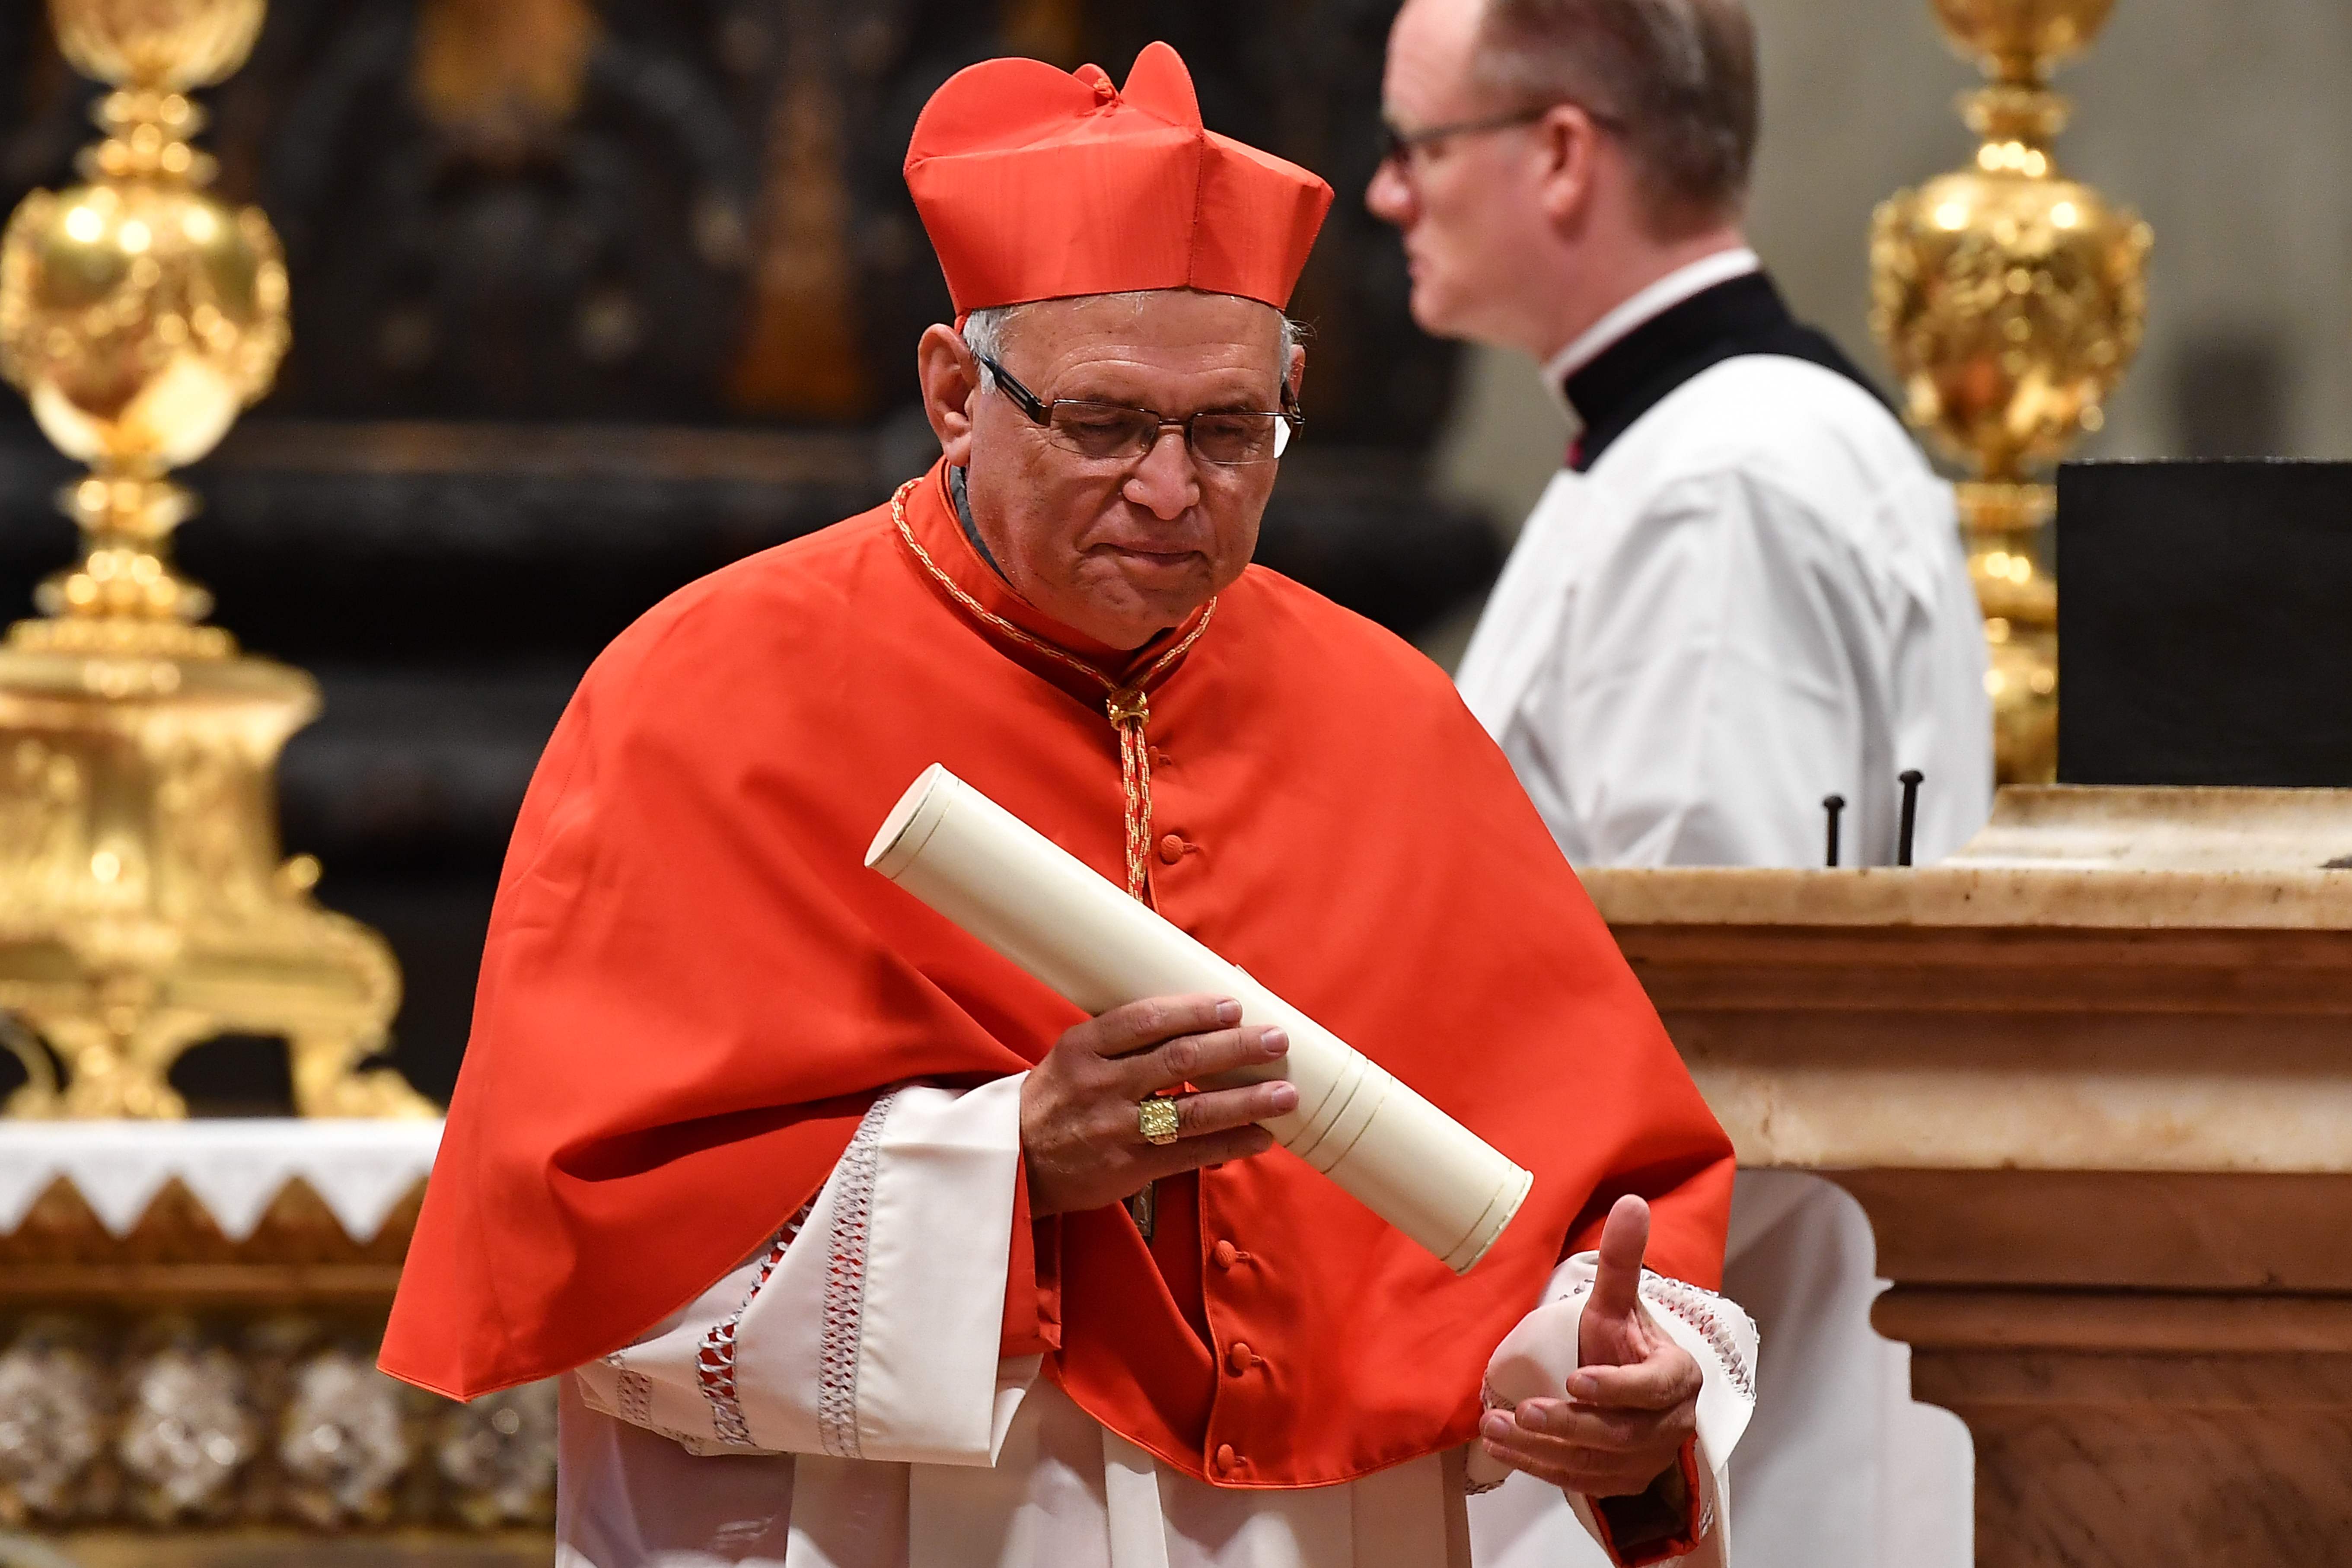 Ramazzini es cardenal desde el 5 de octubre pasado. (Foto Prensa Libre: Hemeroteca PL)